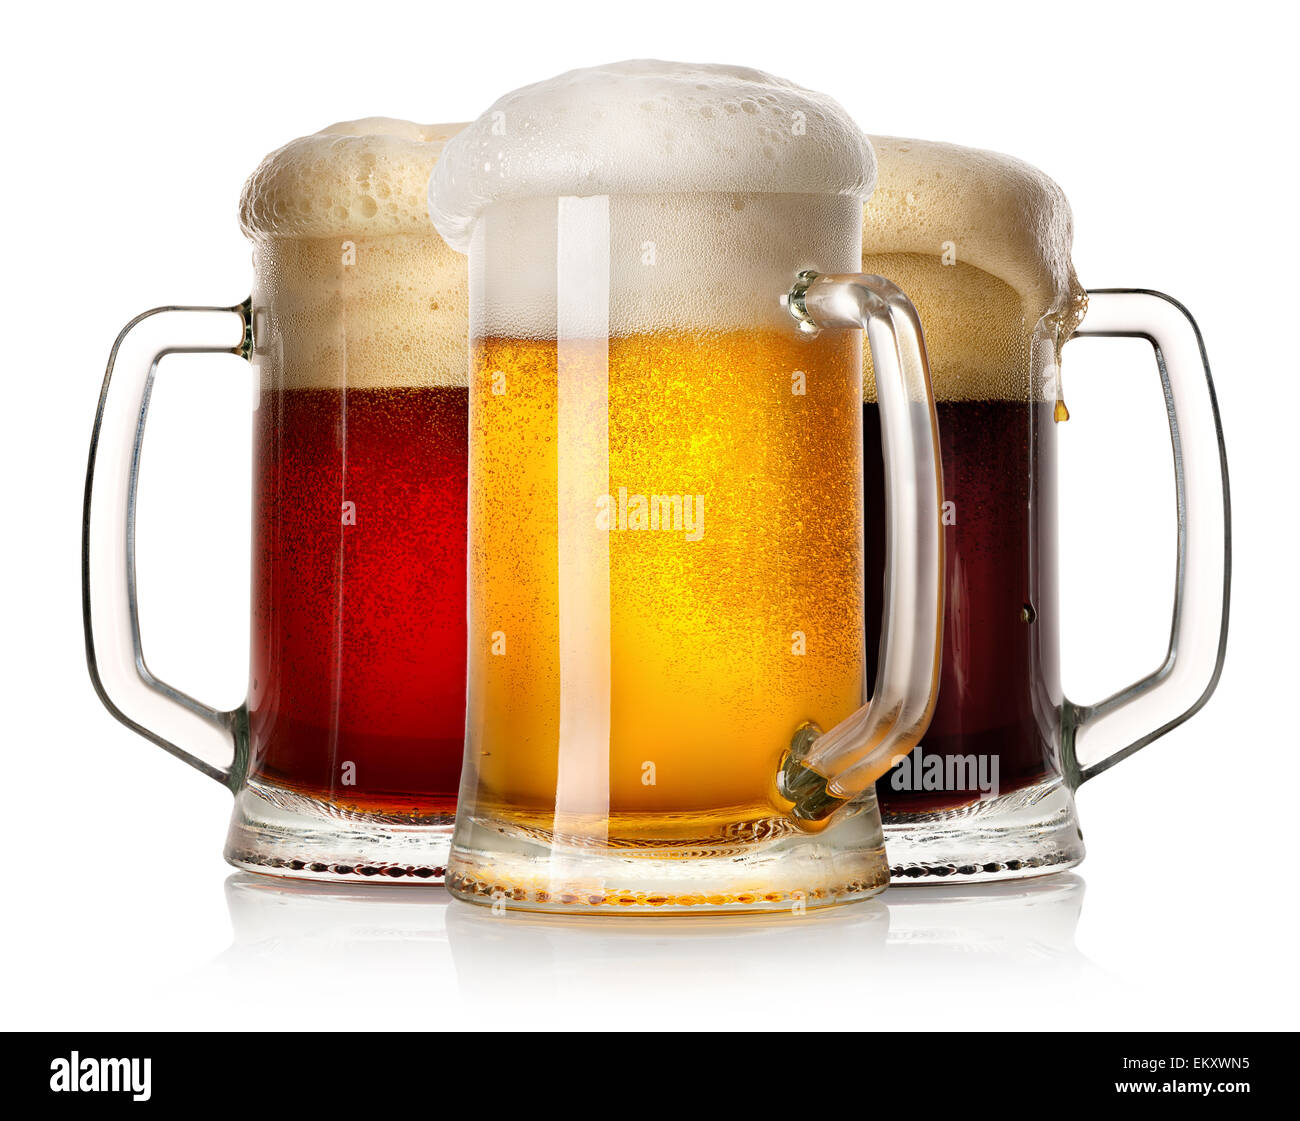 Boccali di birra immagini e fotografie stock ad alta risoluzione - Alamy